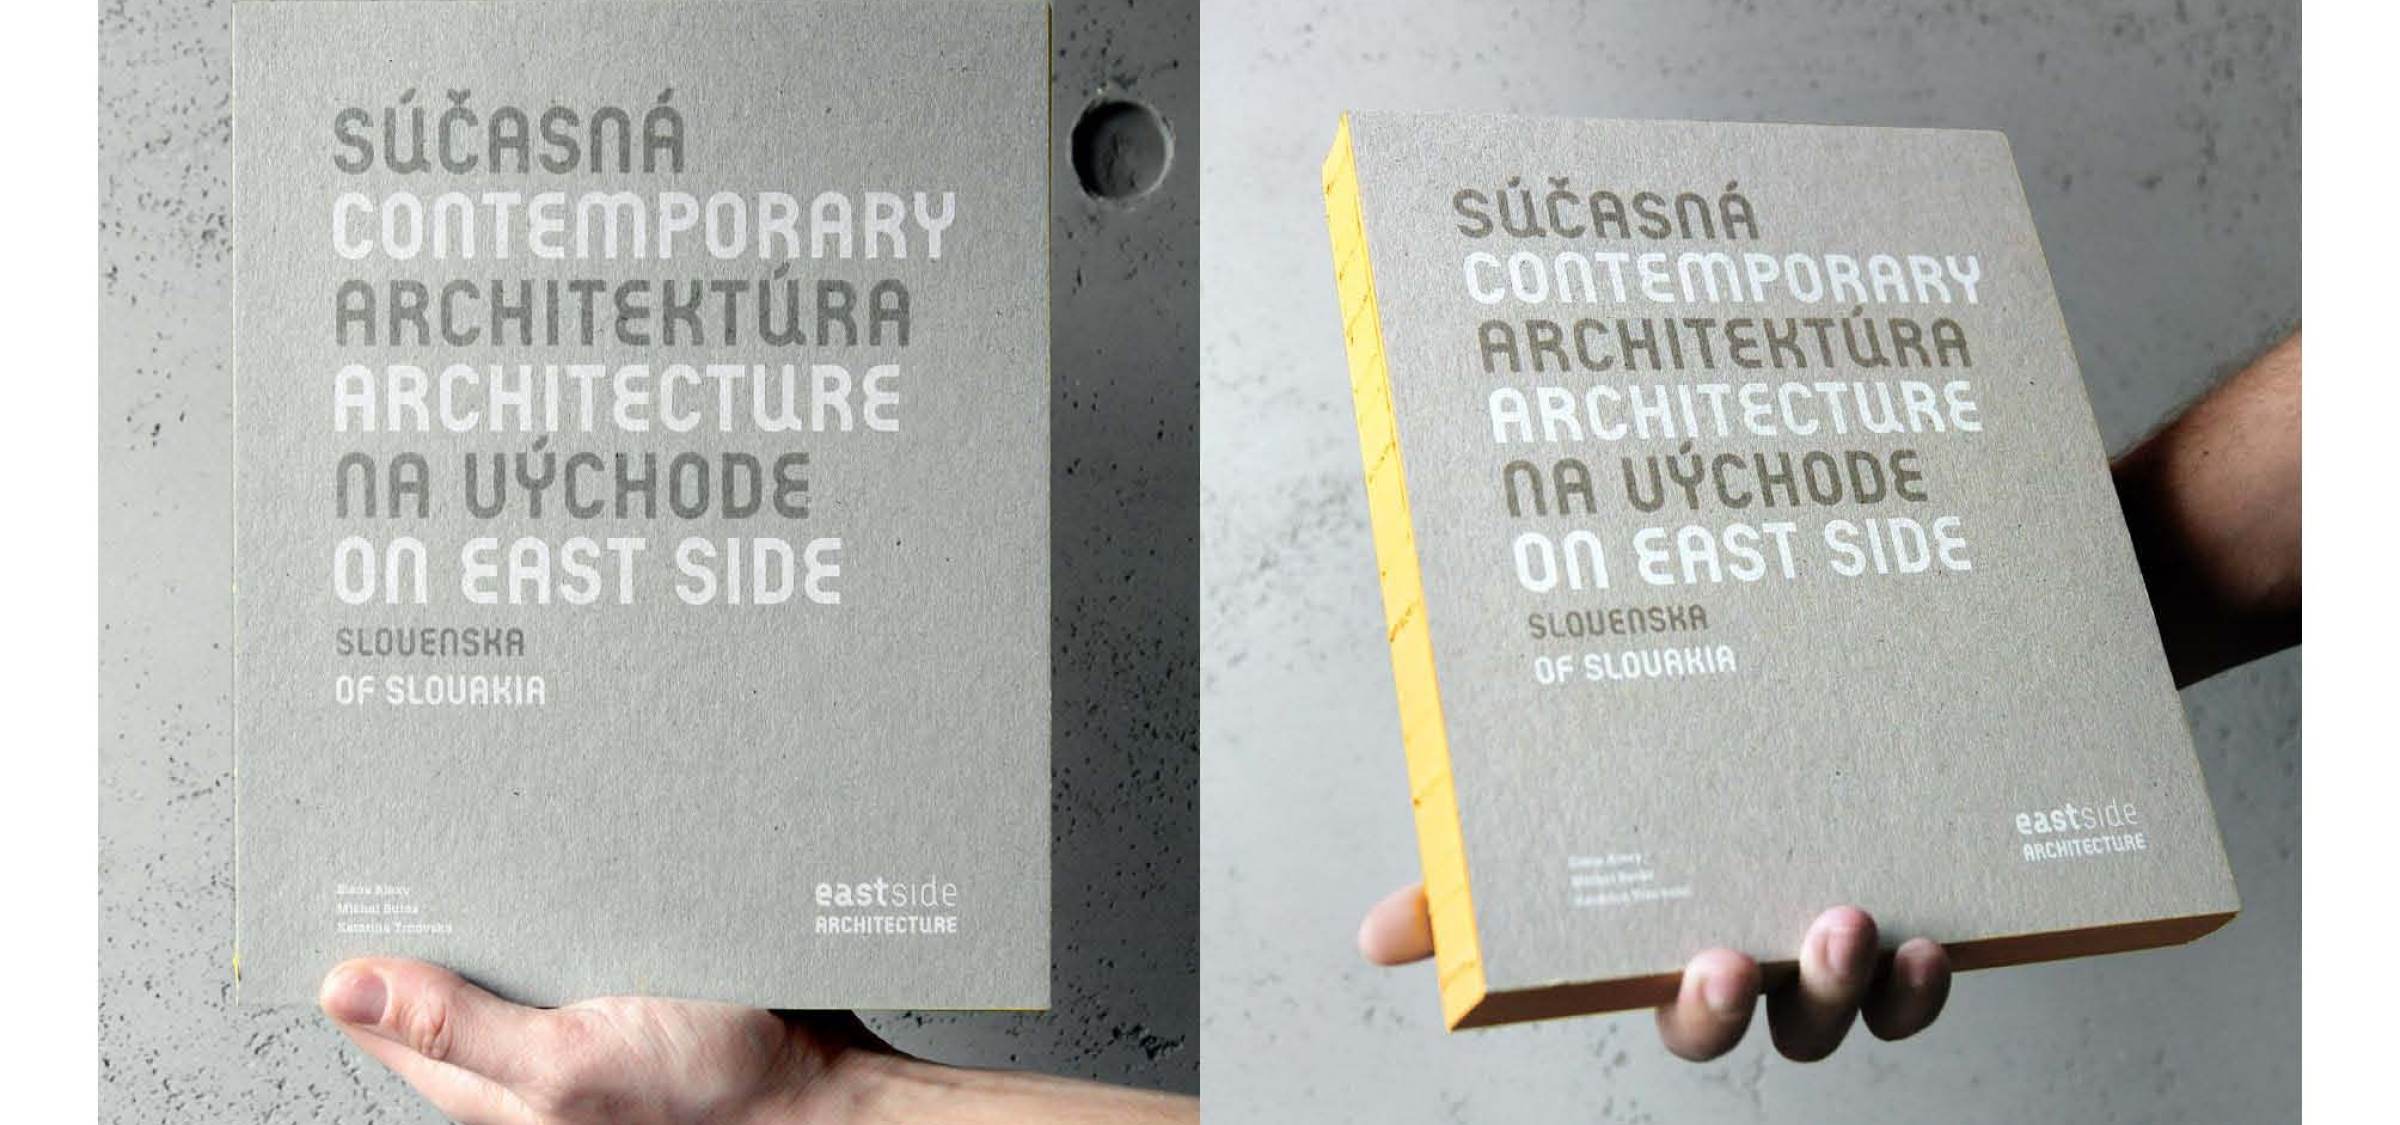 Please support book | News | Atrium Architekti